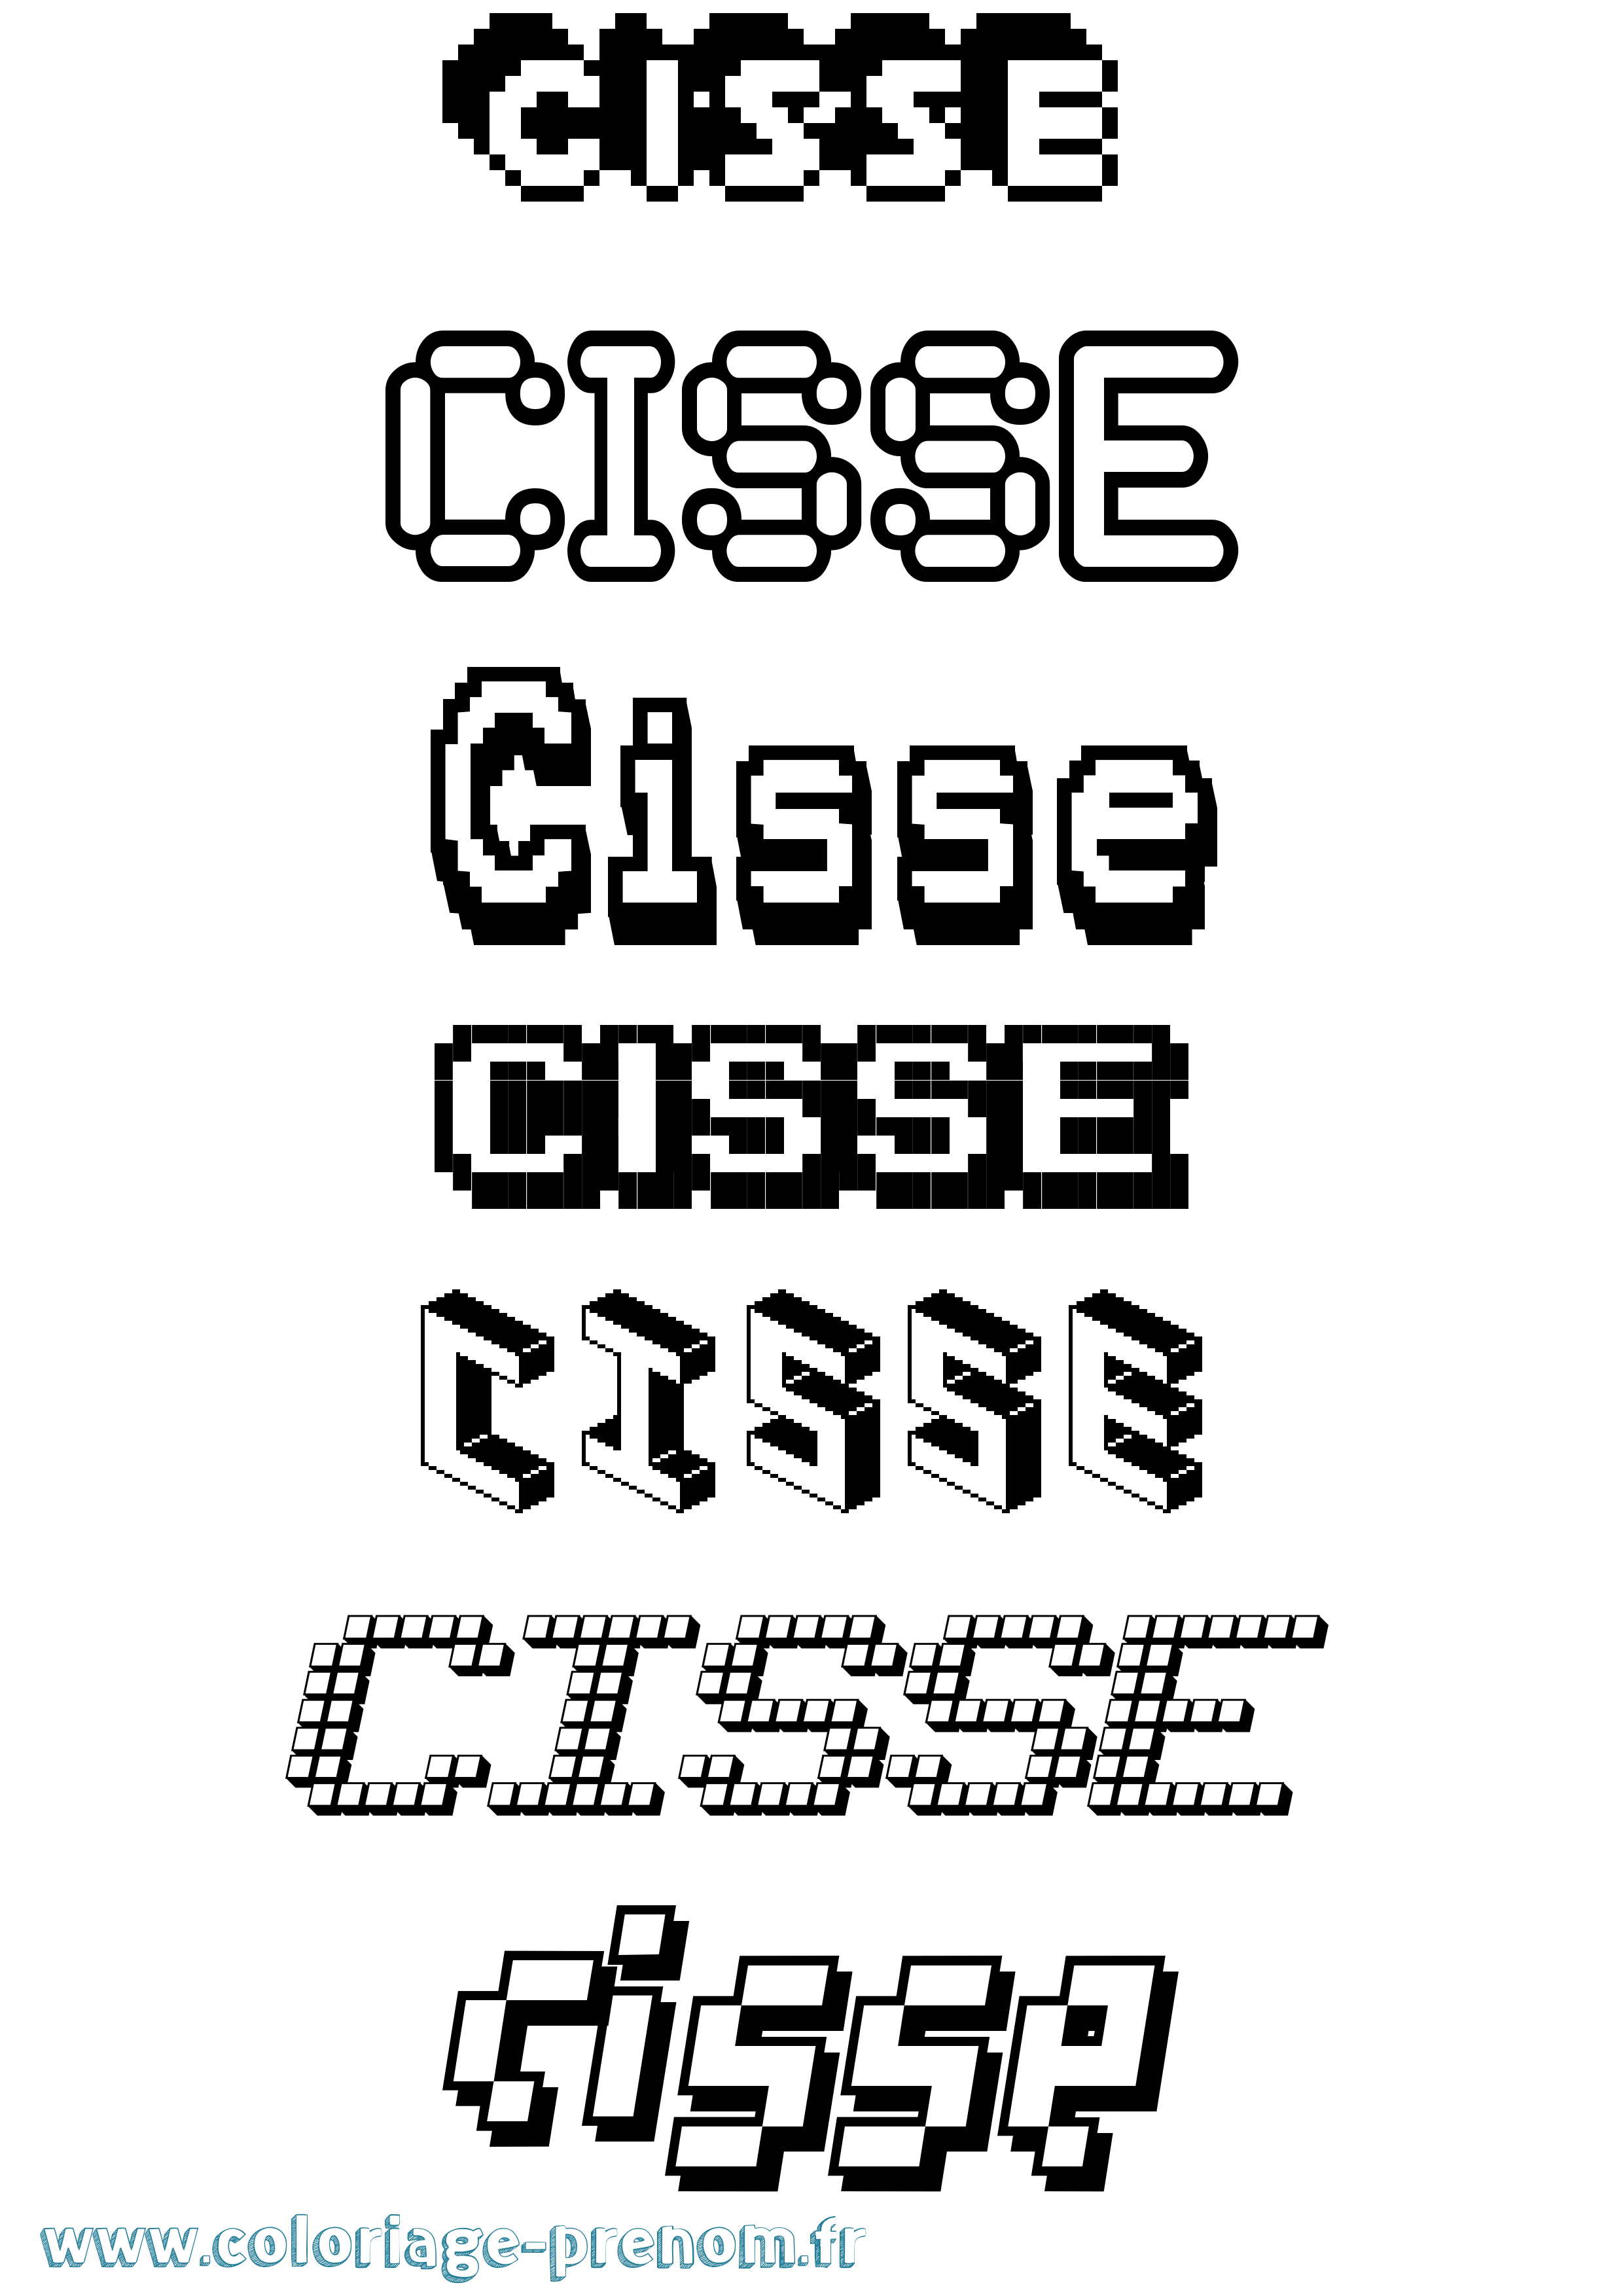 Coloriage prénom Cisse Pixel